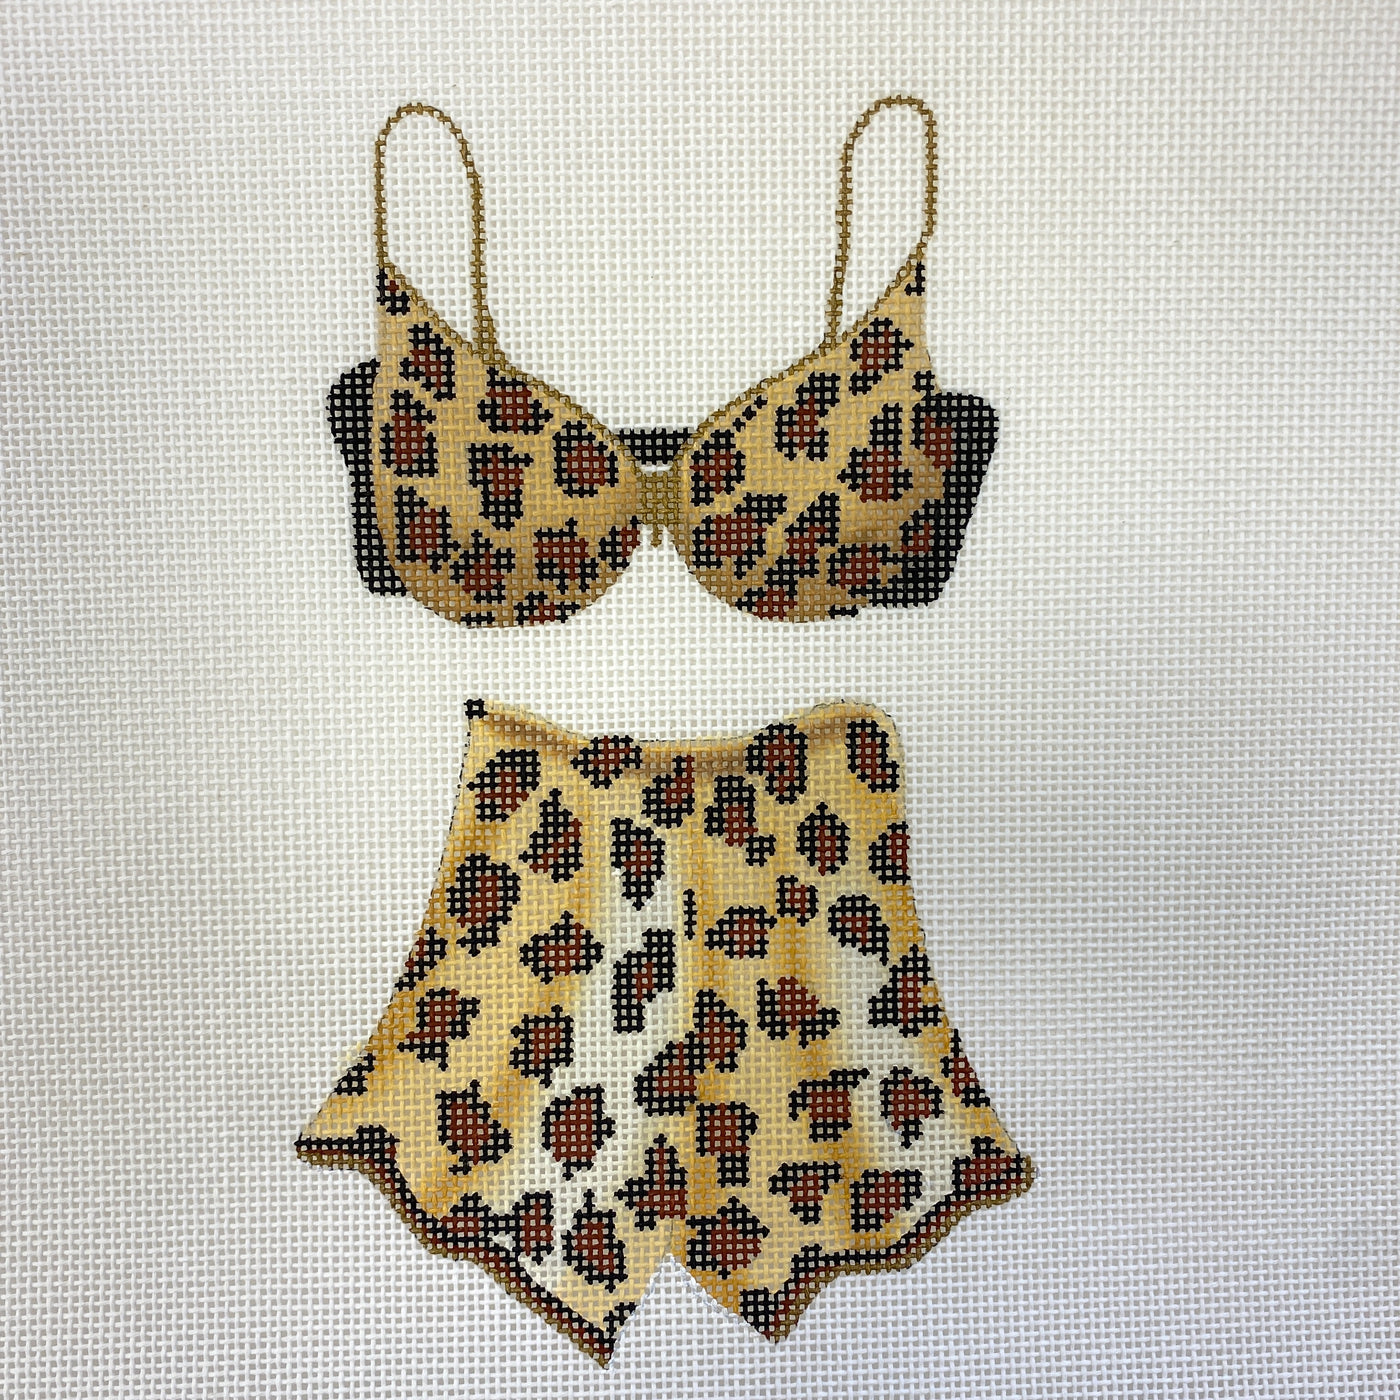 Leopard Bra & Pants Set Needlepoint Canvas